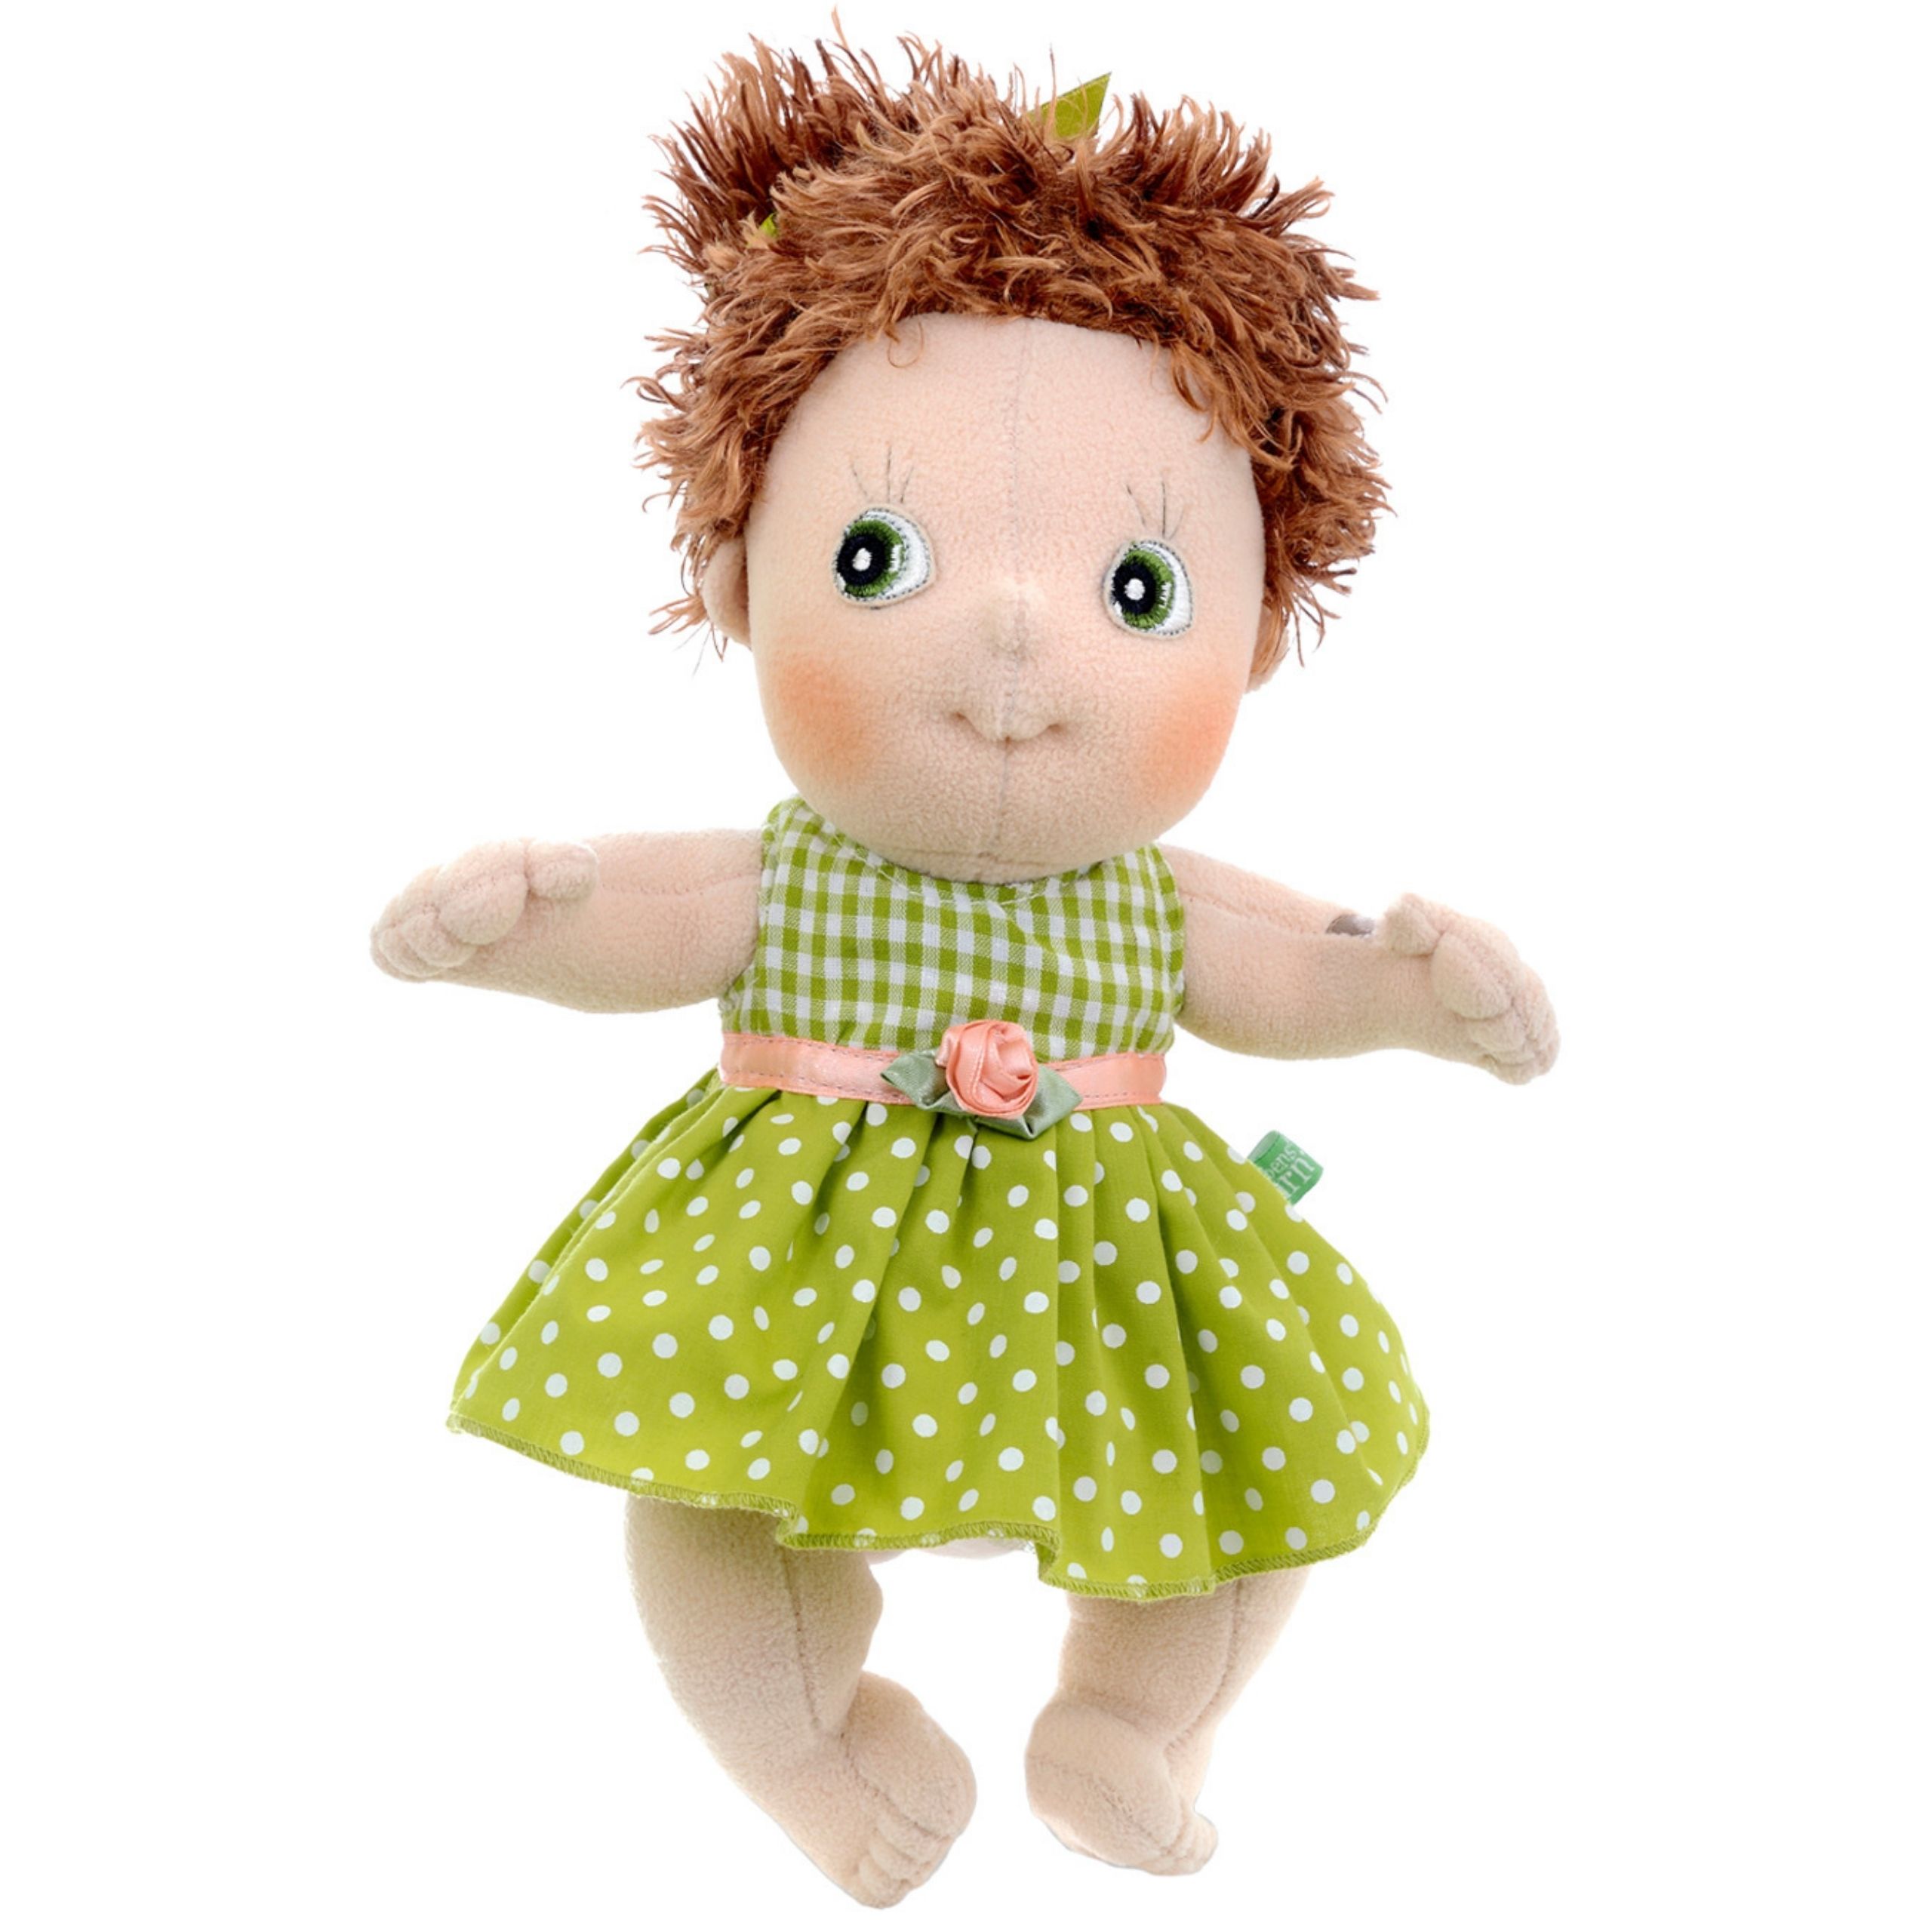 Soft dolls rubens barn soft doll karin	cutie classic